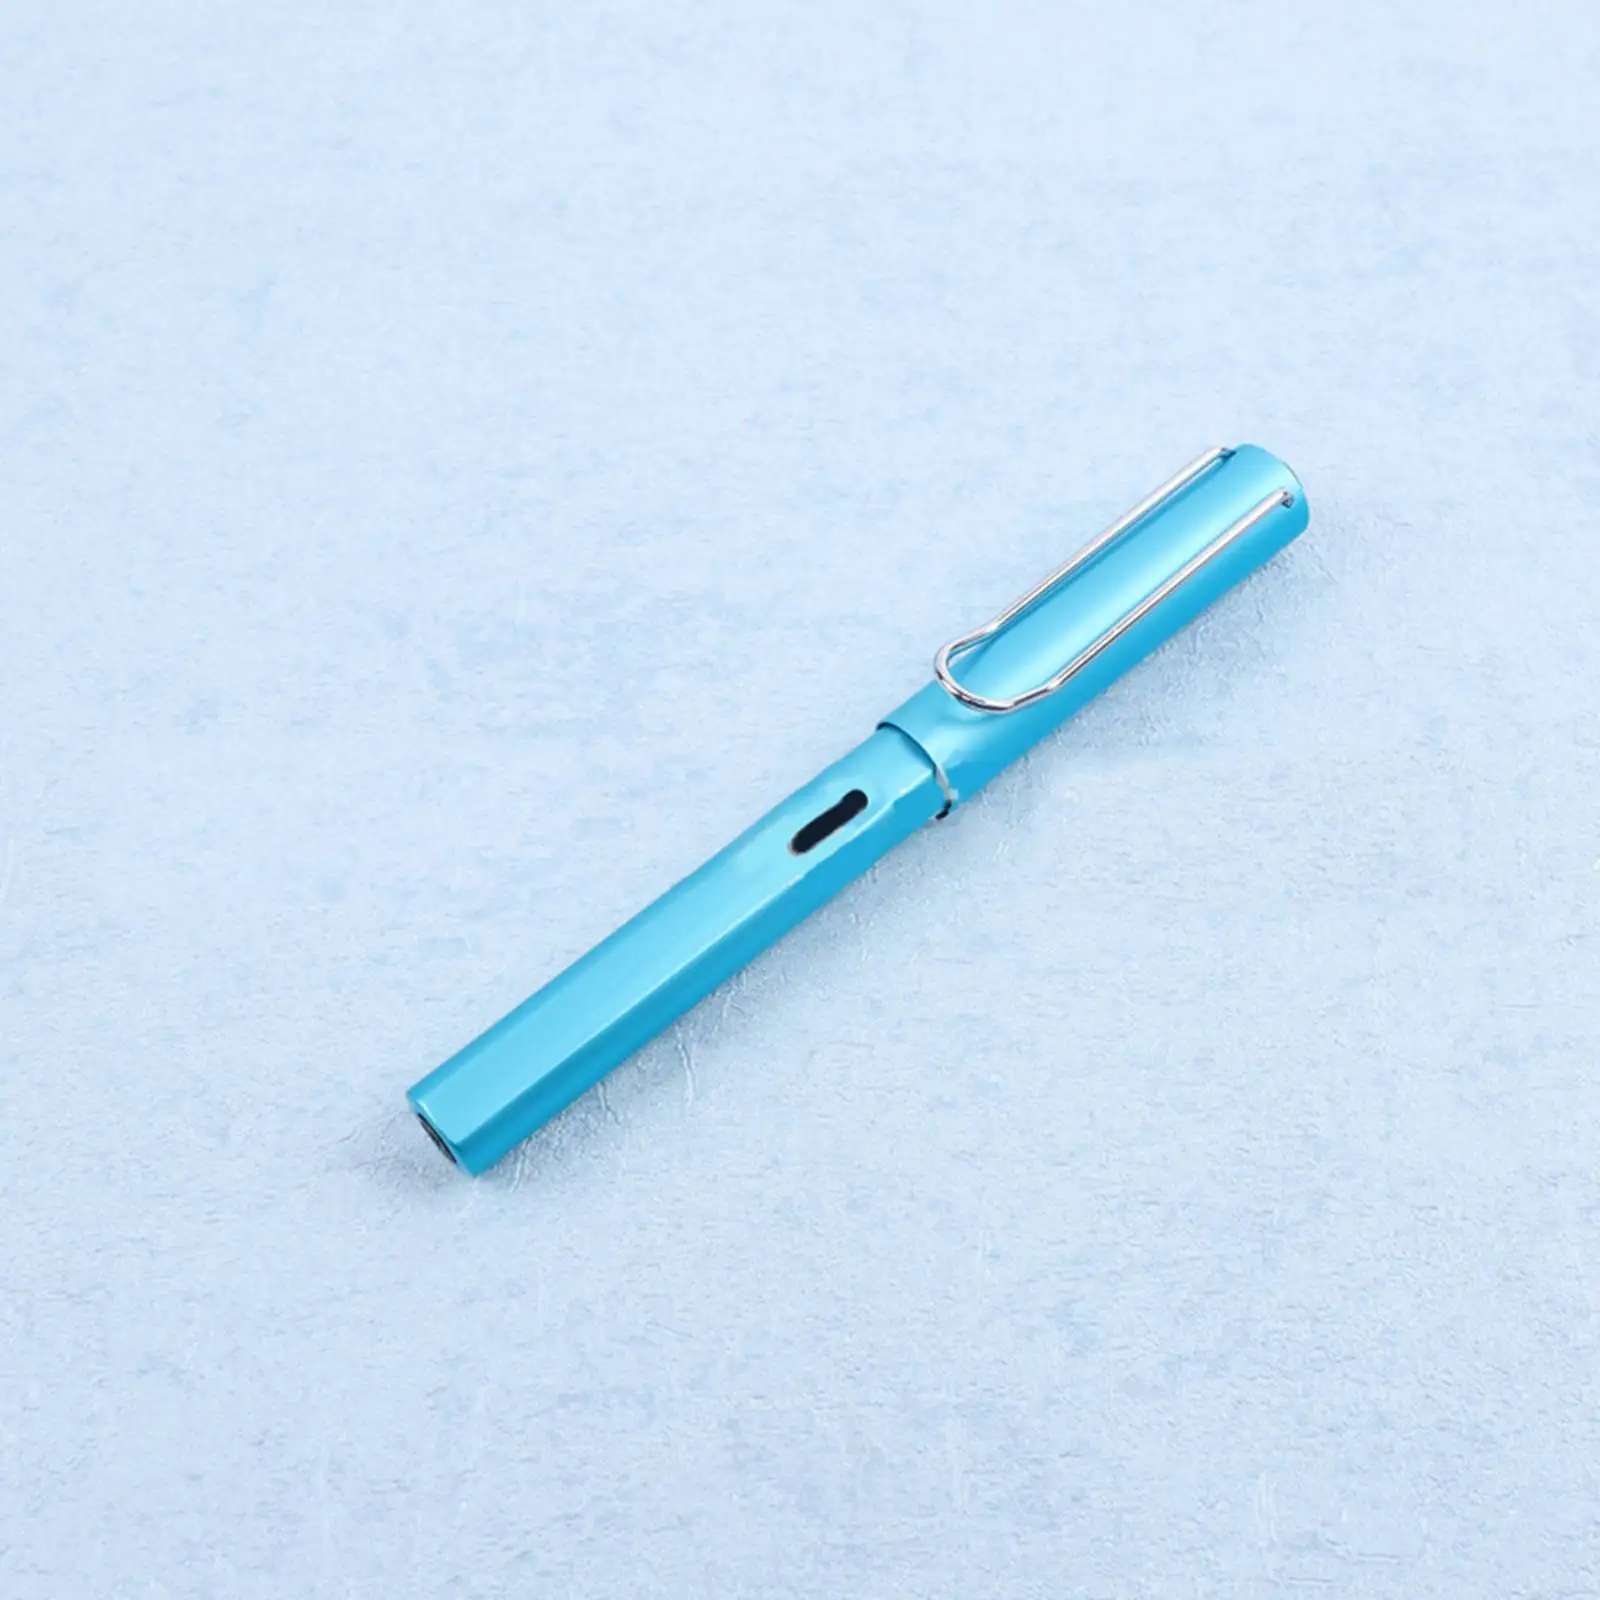 Ручка перьевая Lanbitou 6010 металлическая со сменными чернилами подарок для школы и